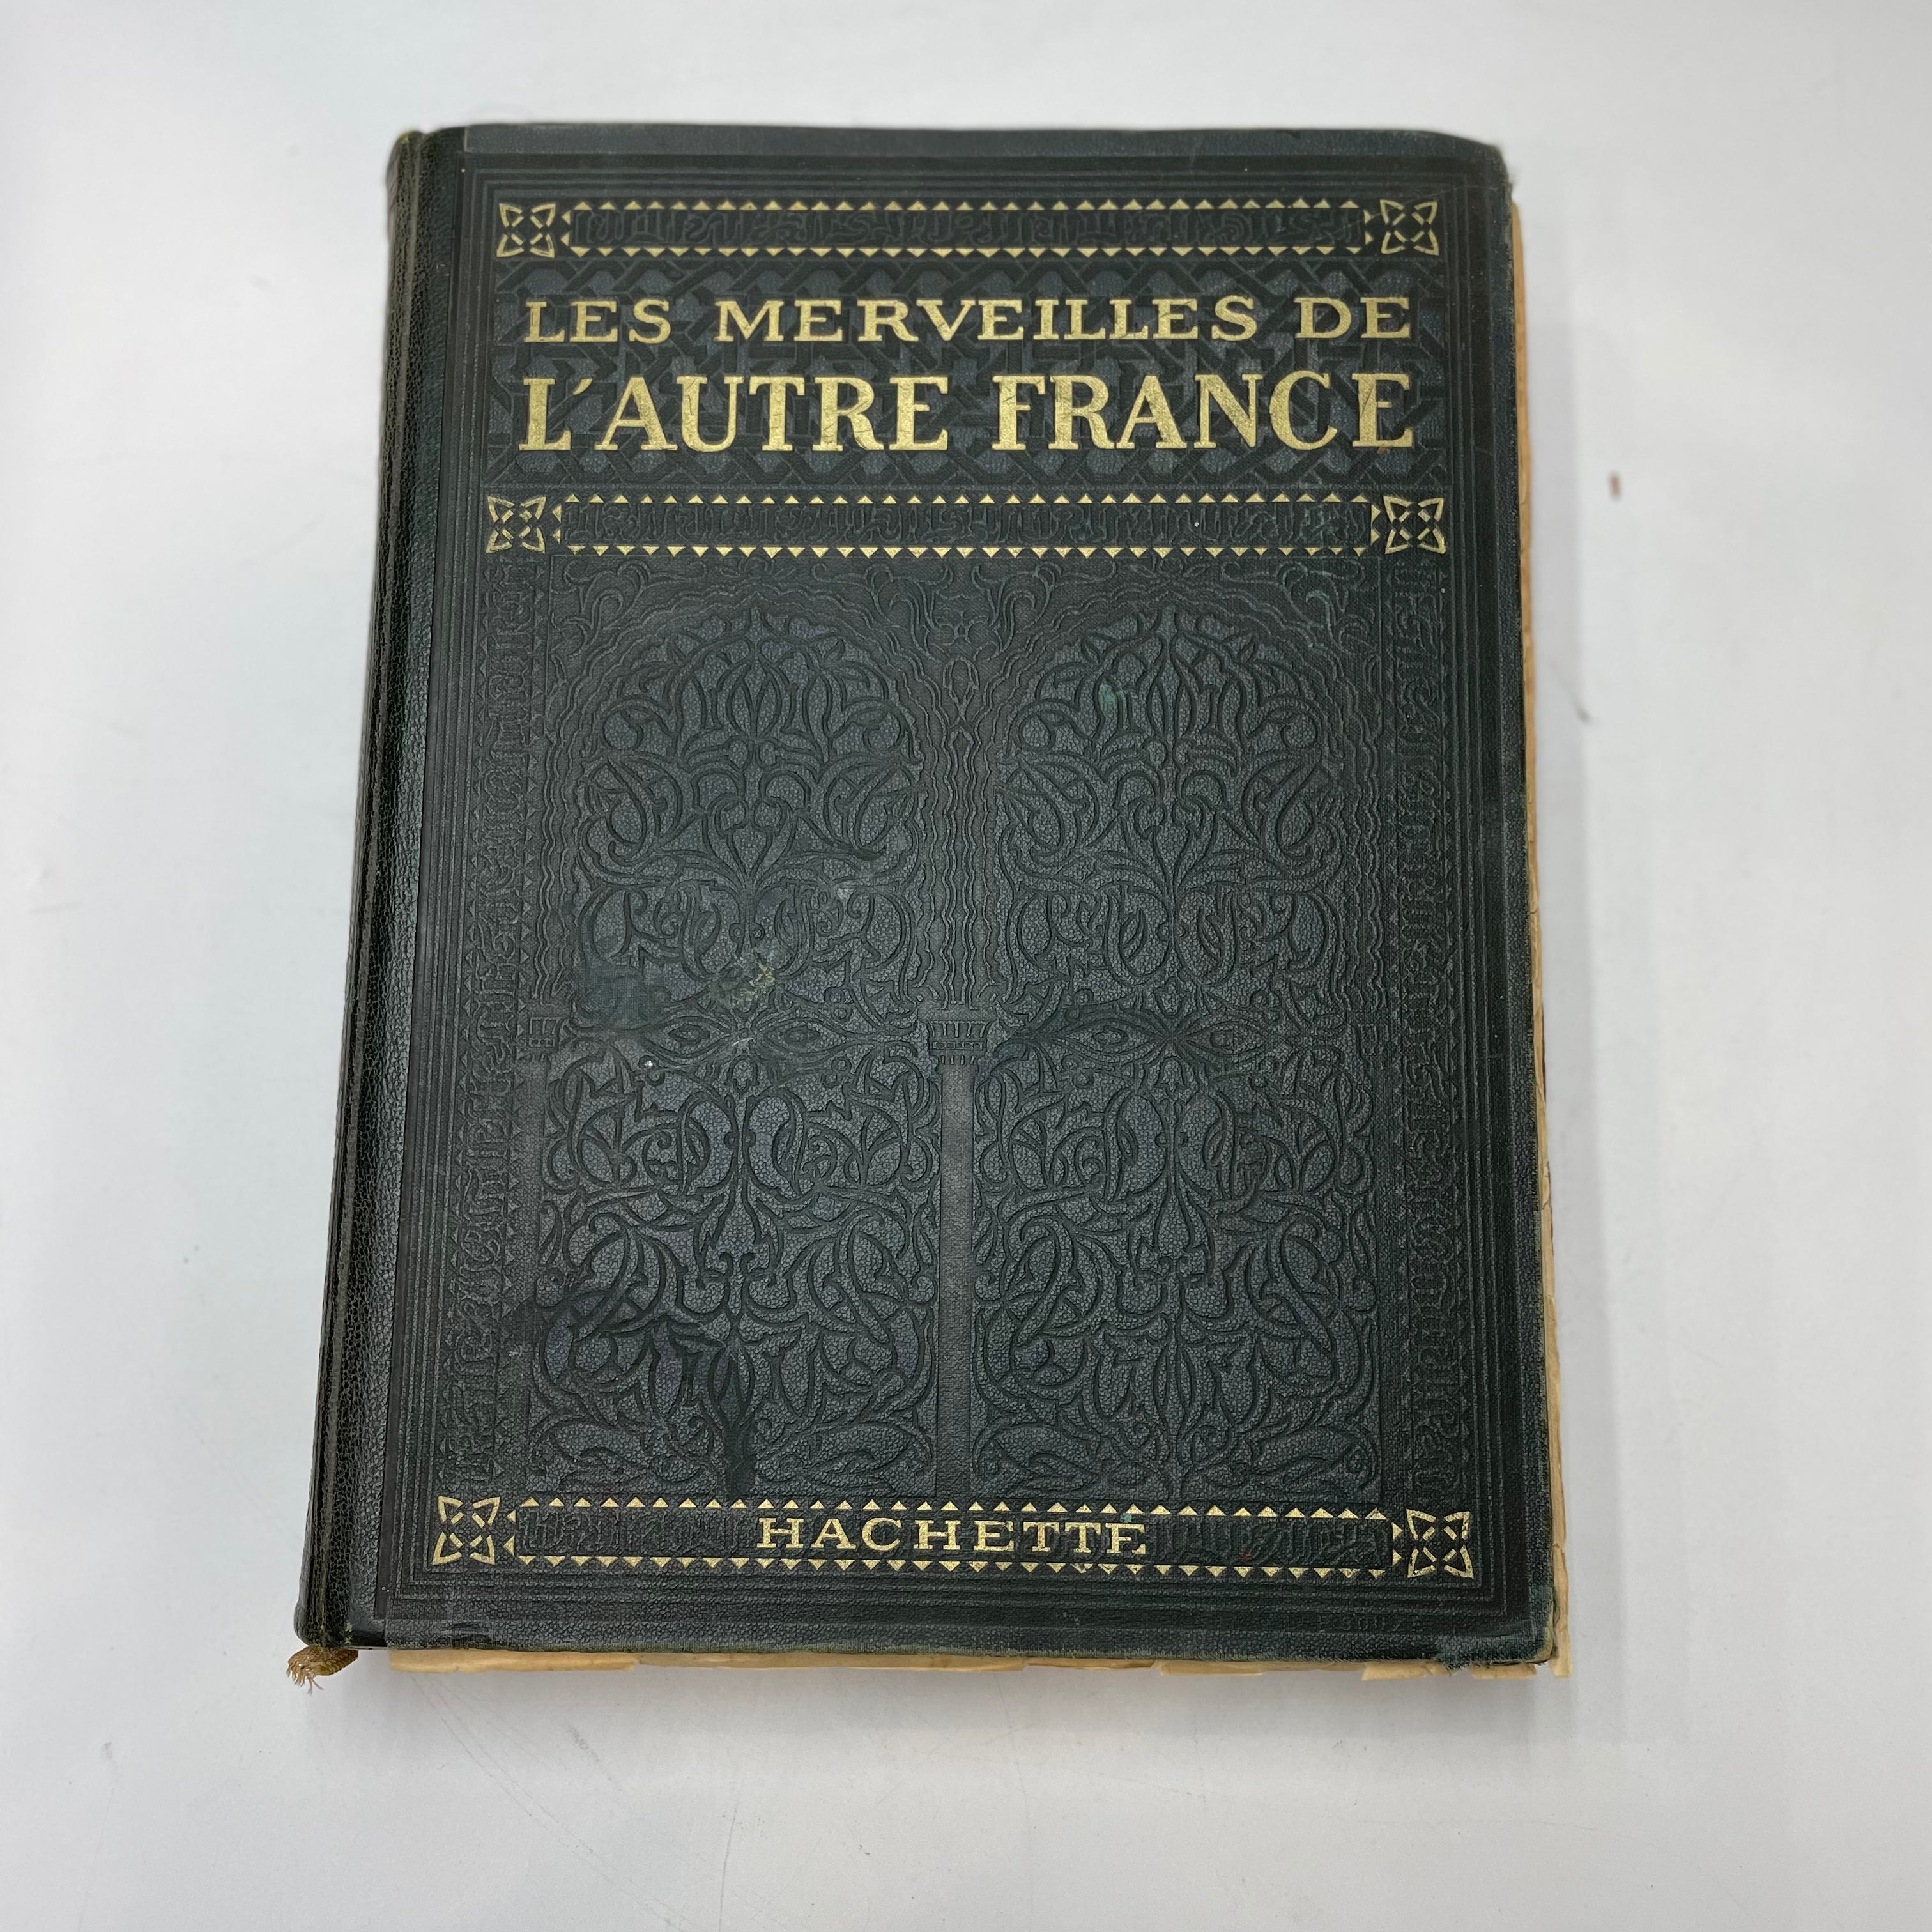 Les Merveilles de L'Autre France edited by Hachette